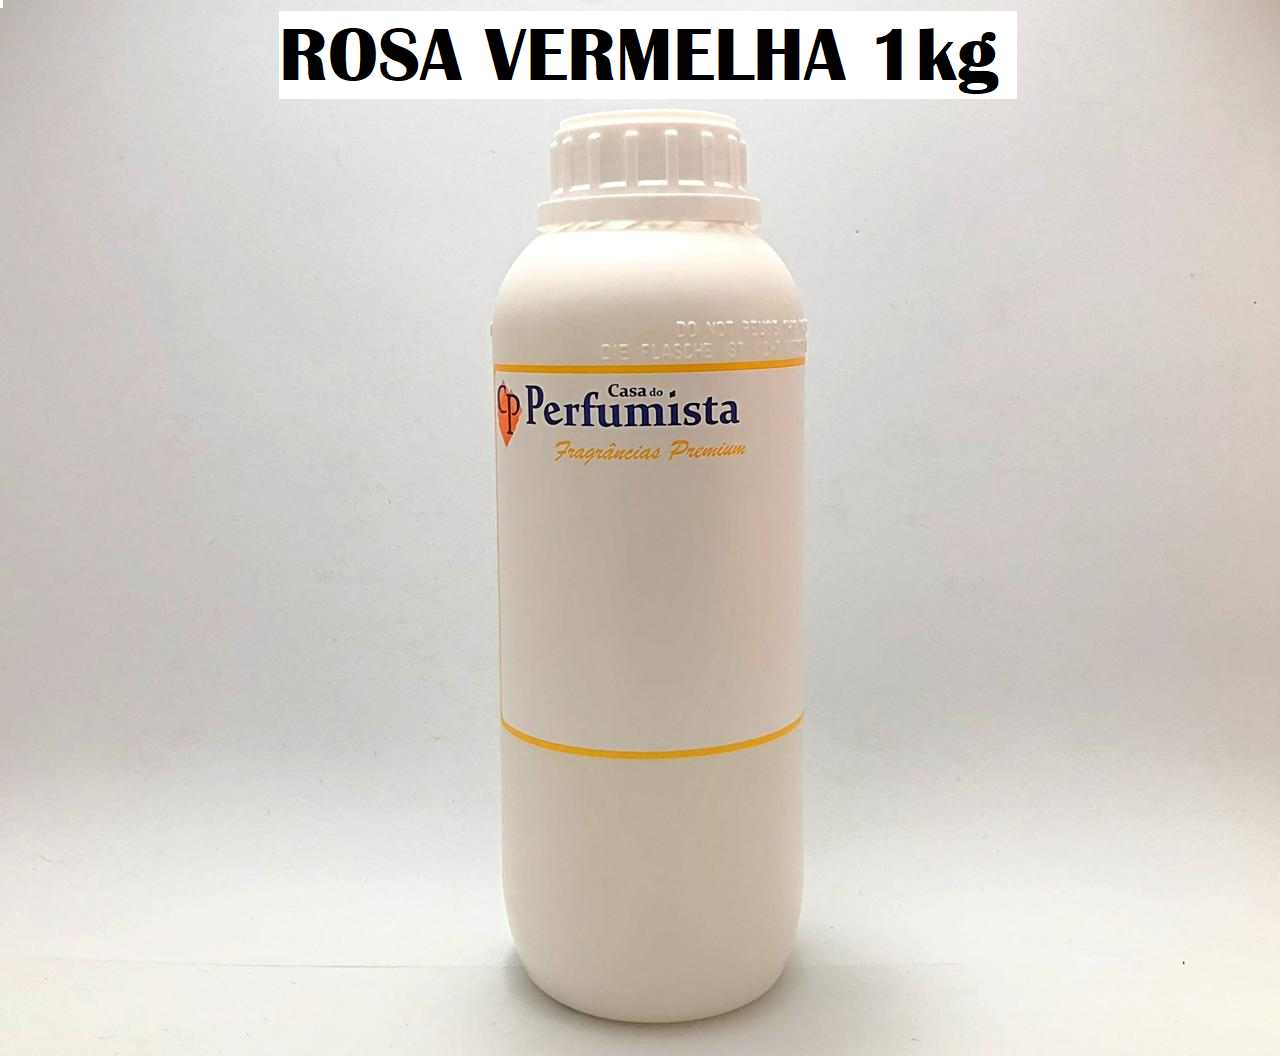 ROSA VERMELHA - 1kg